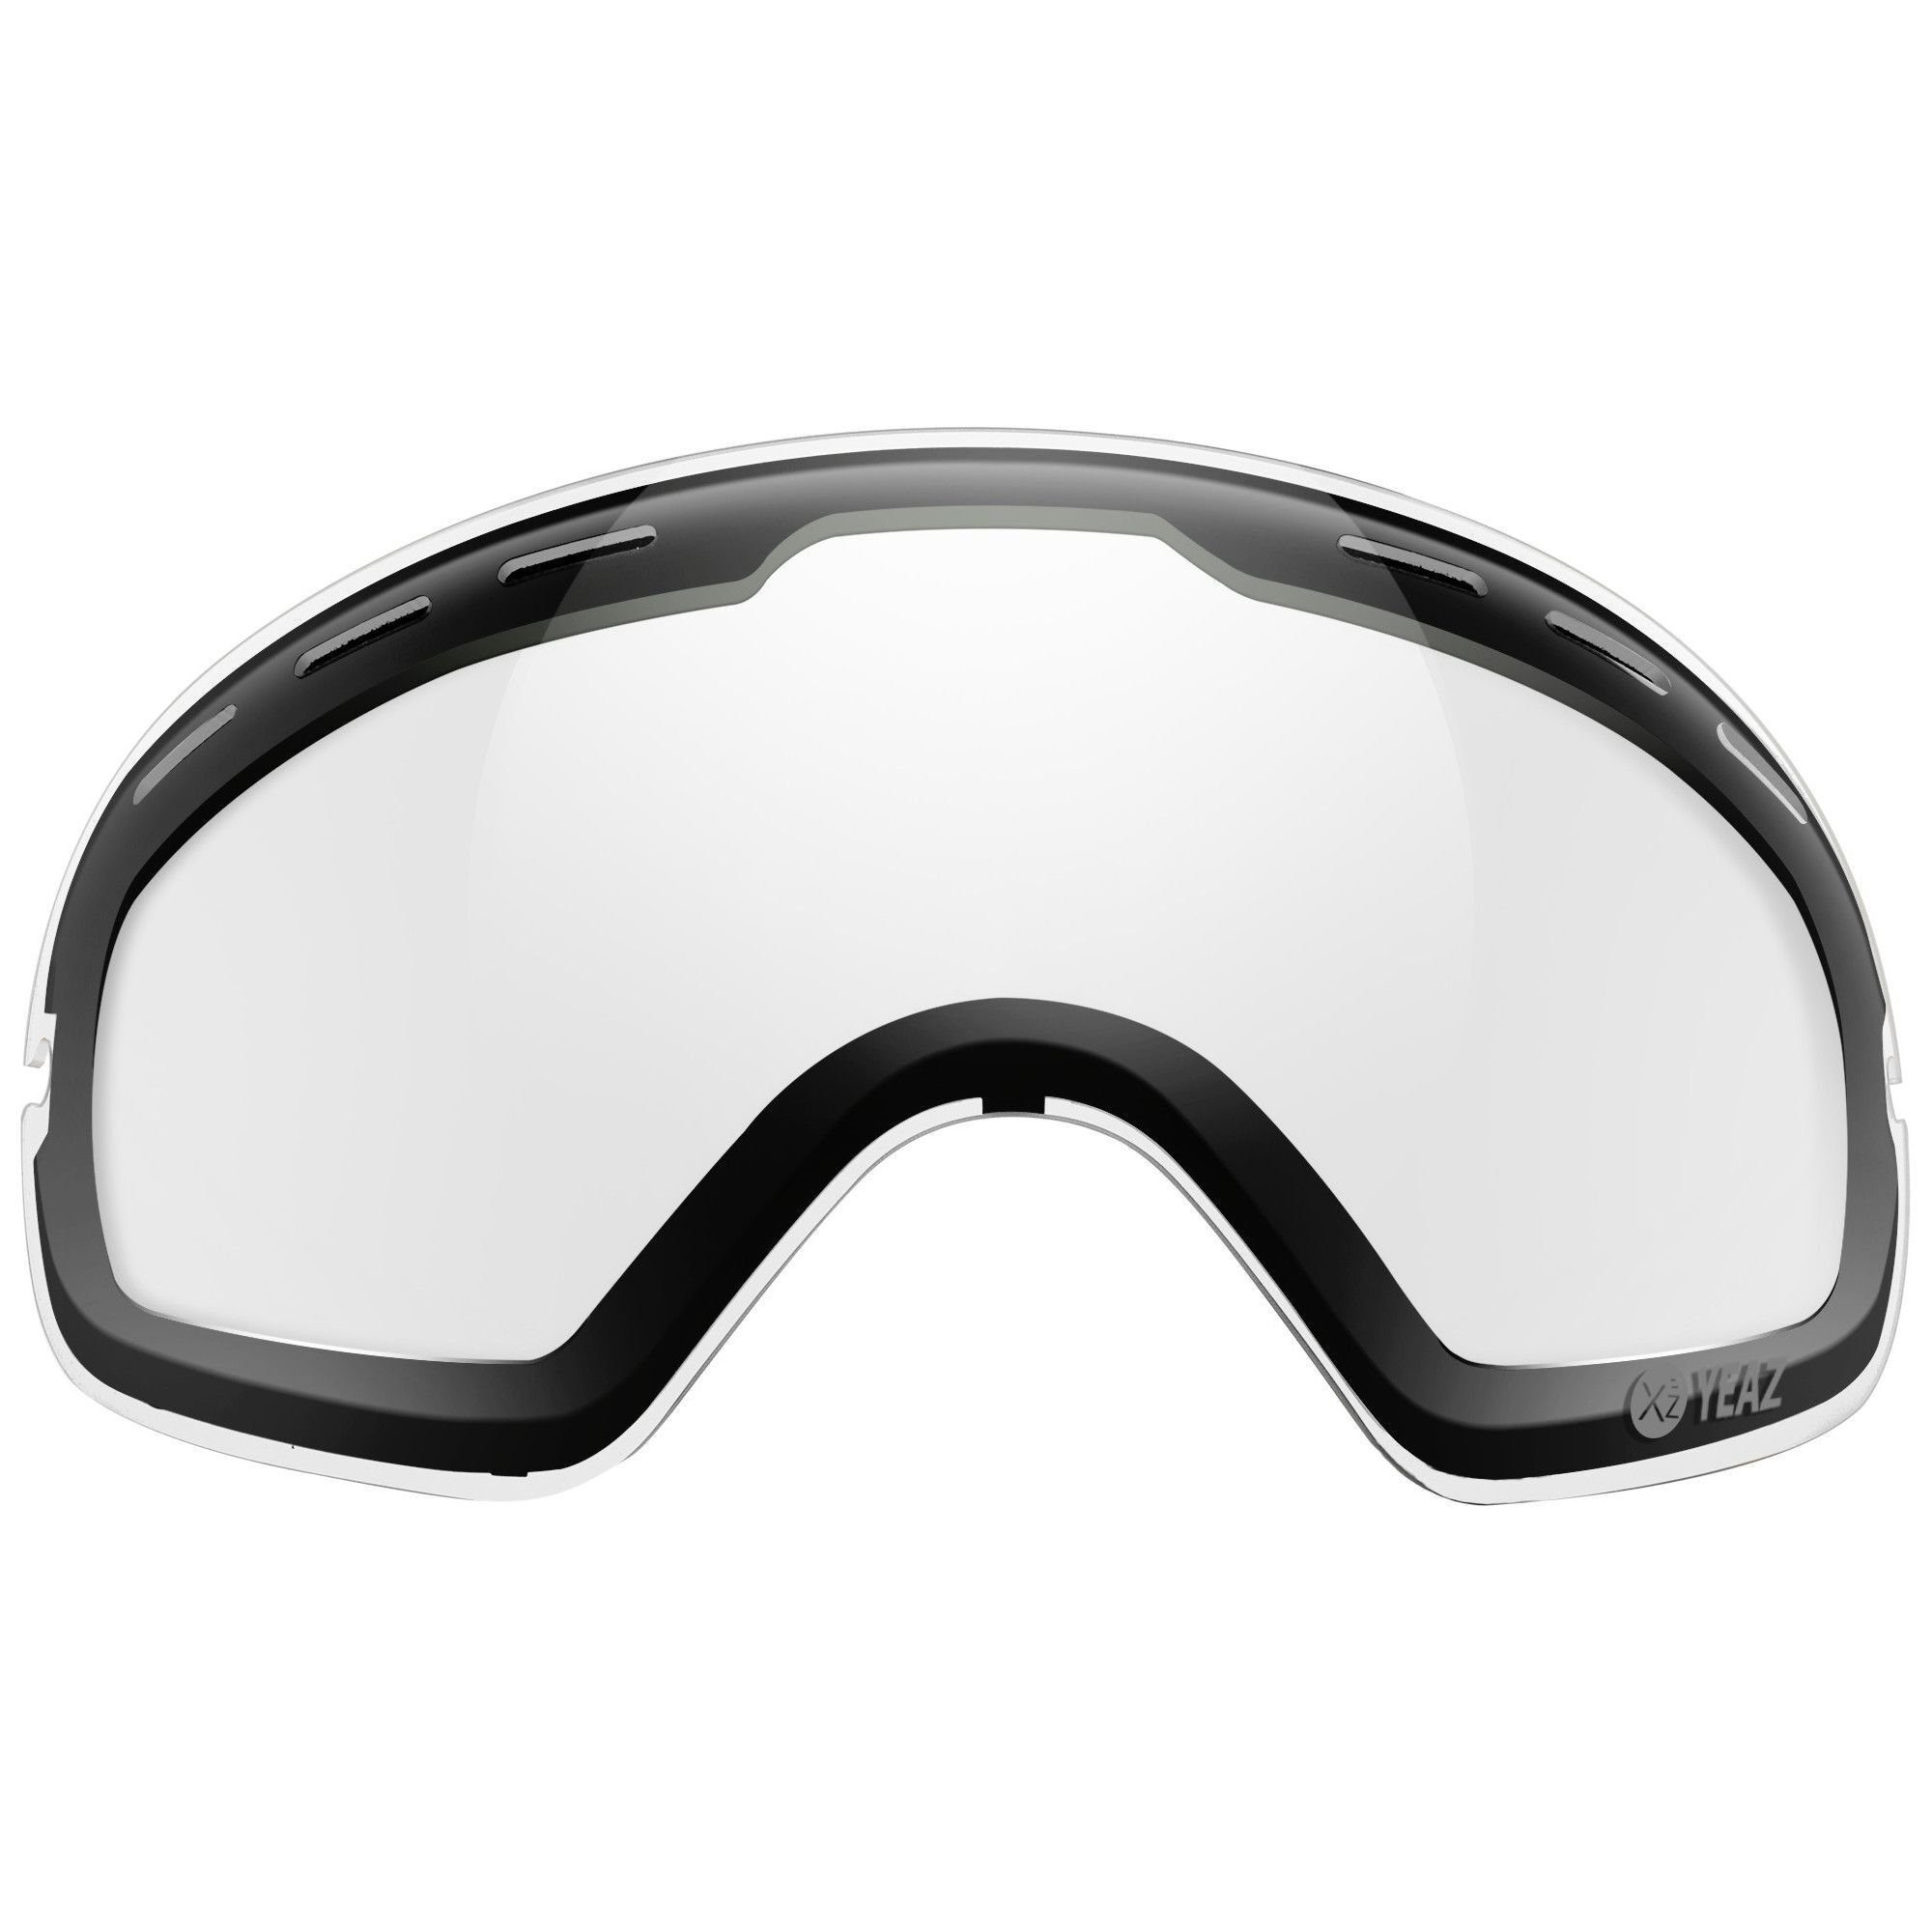 YEAZ Skibrille XTRM-SUMMIT photochrome wechselglas, ohne rahmen, Ersatzglas für XTRM-SUMMIT Skibrille ohne Rahmen